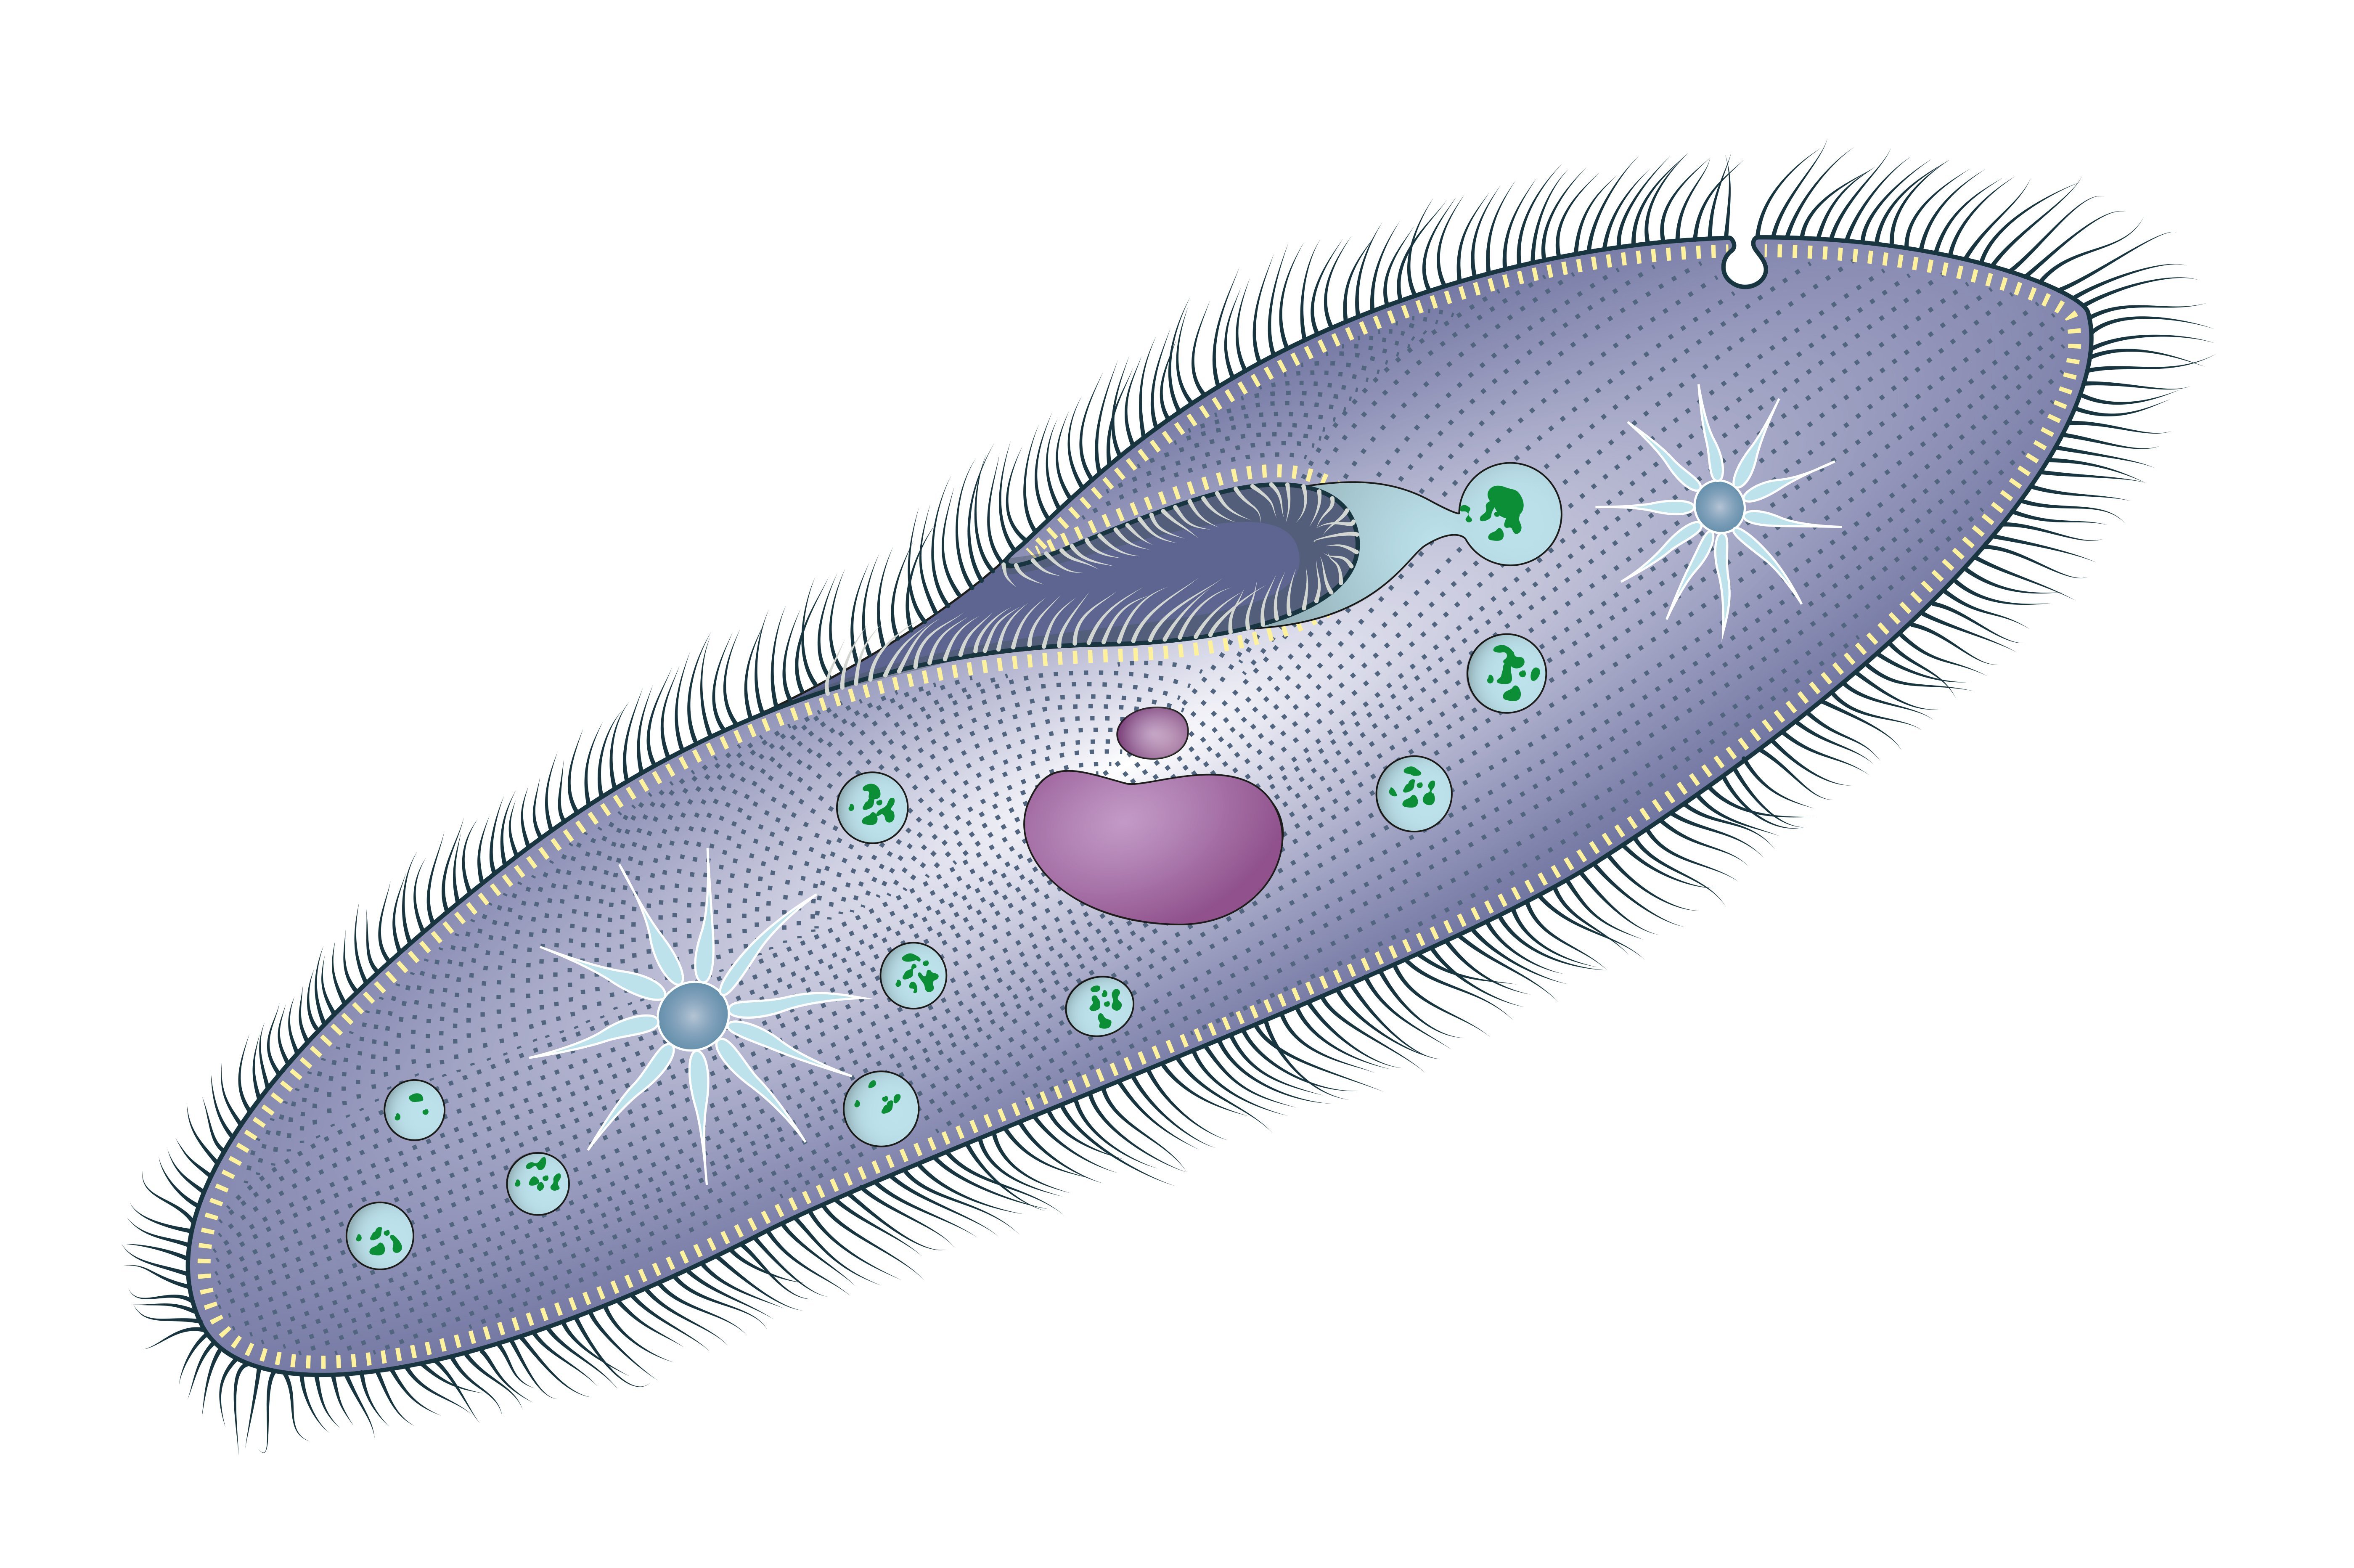 Paramecium are unicellular protozoans.